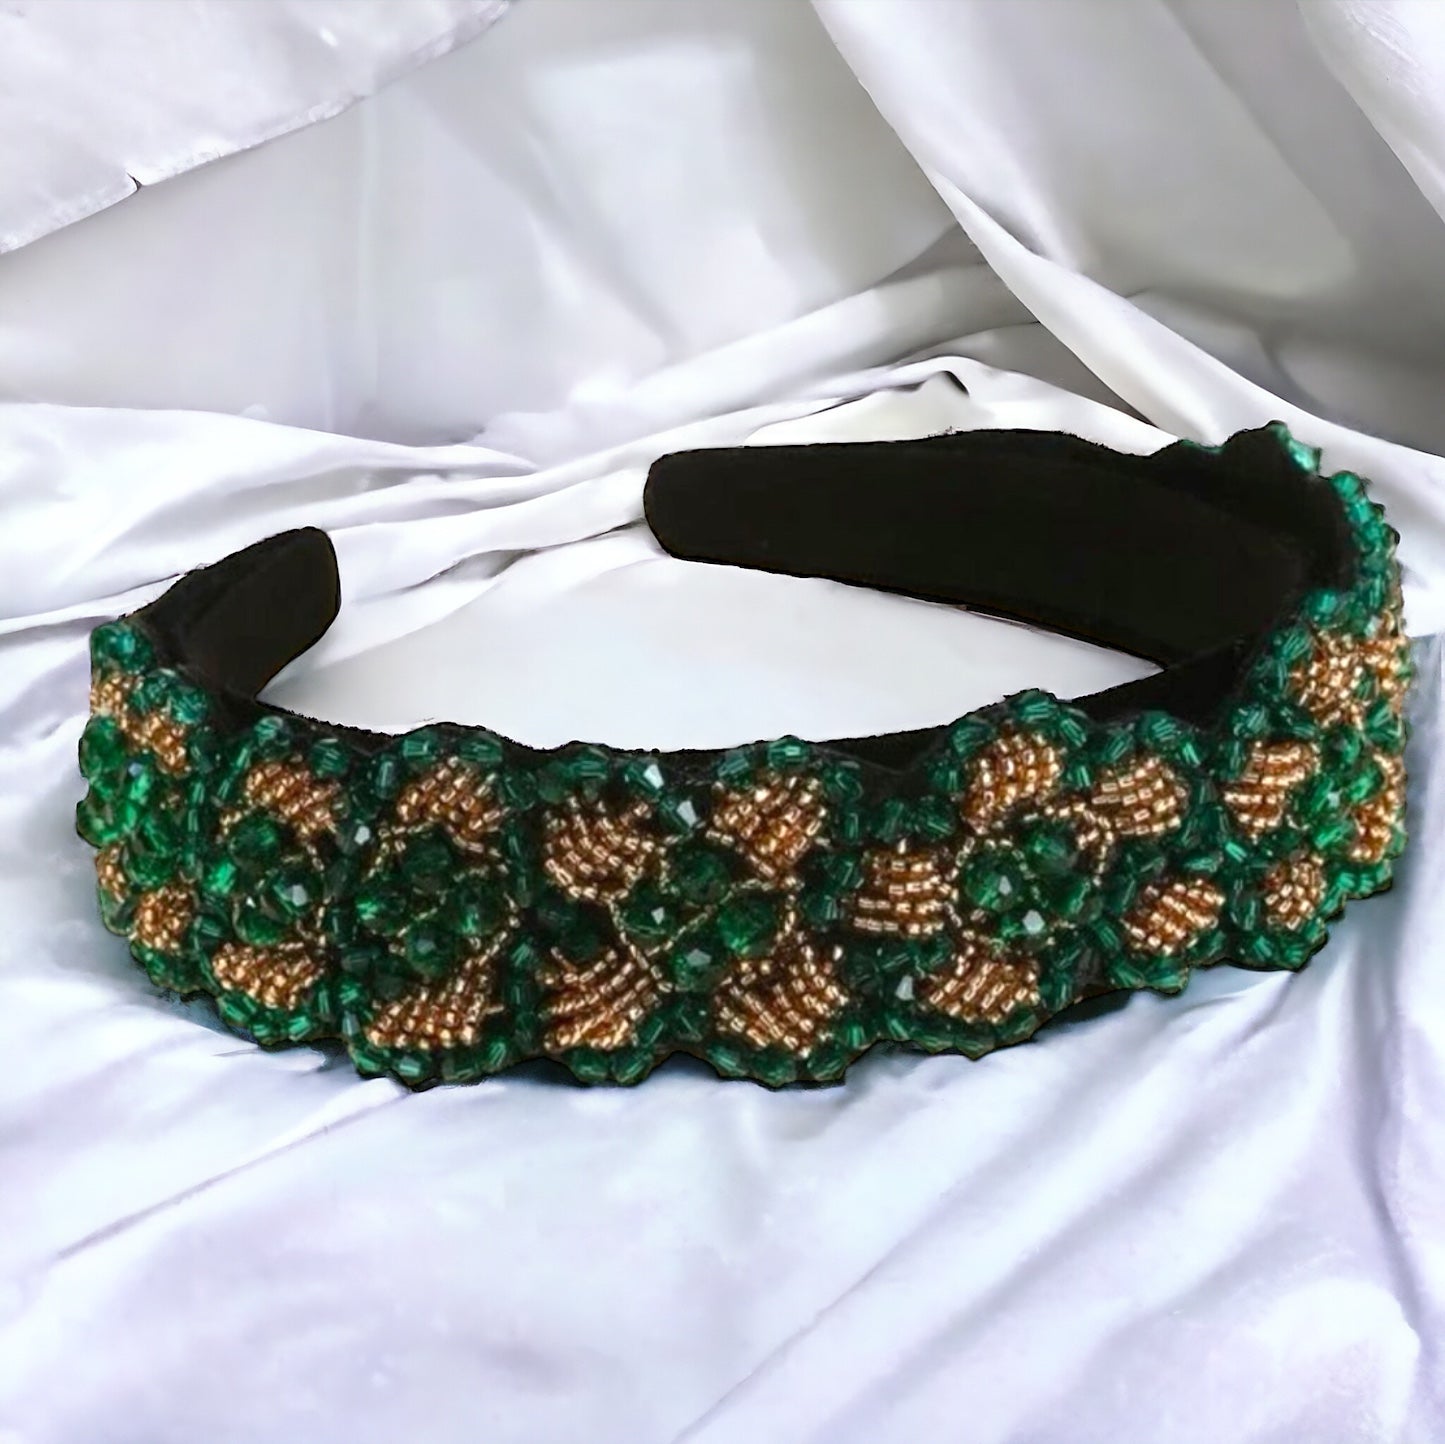 Beaded Green and Gold Headband - Handmade Headpiece, St. Patrick’s Day Headband, Holiday Headpiece, Beaded Headband